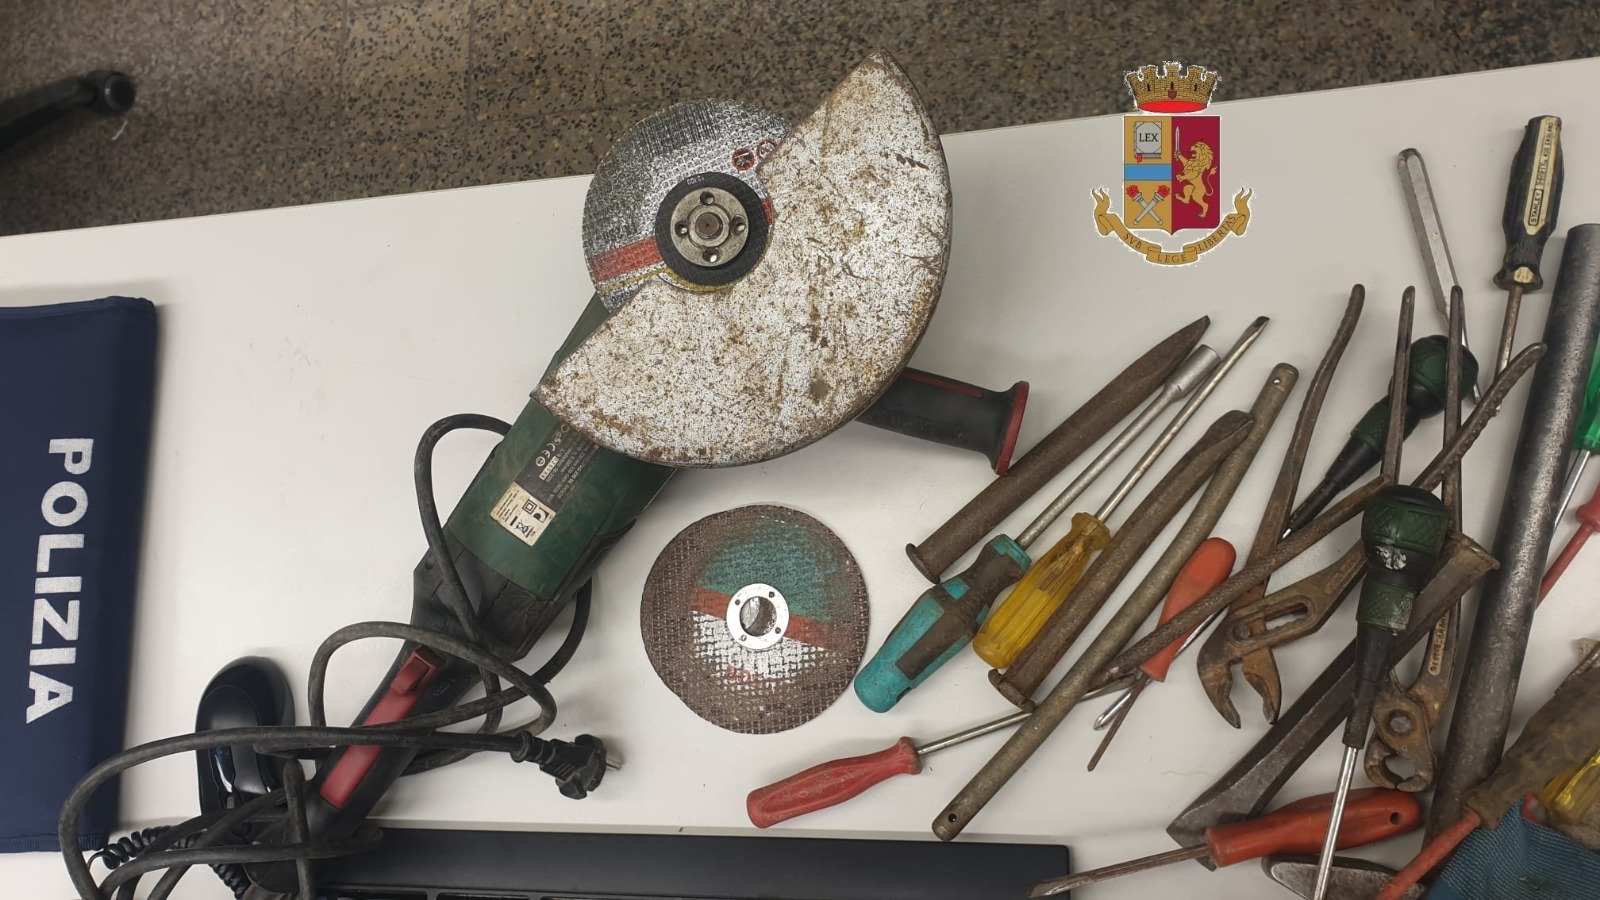 Furgone sospetto fermato dalla Polizia, all’interno trovati attrezzi da scasso: foglio di via per due rumeni